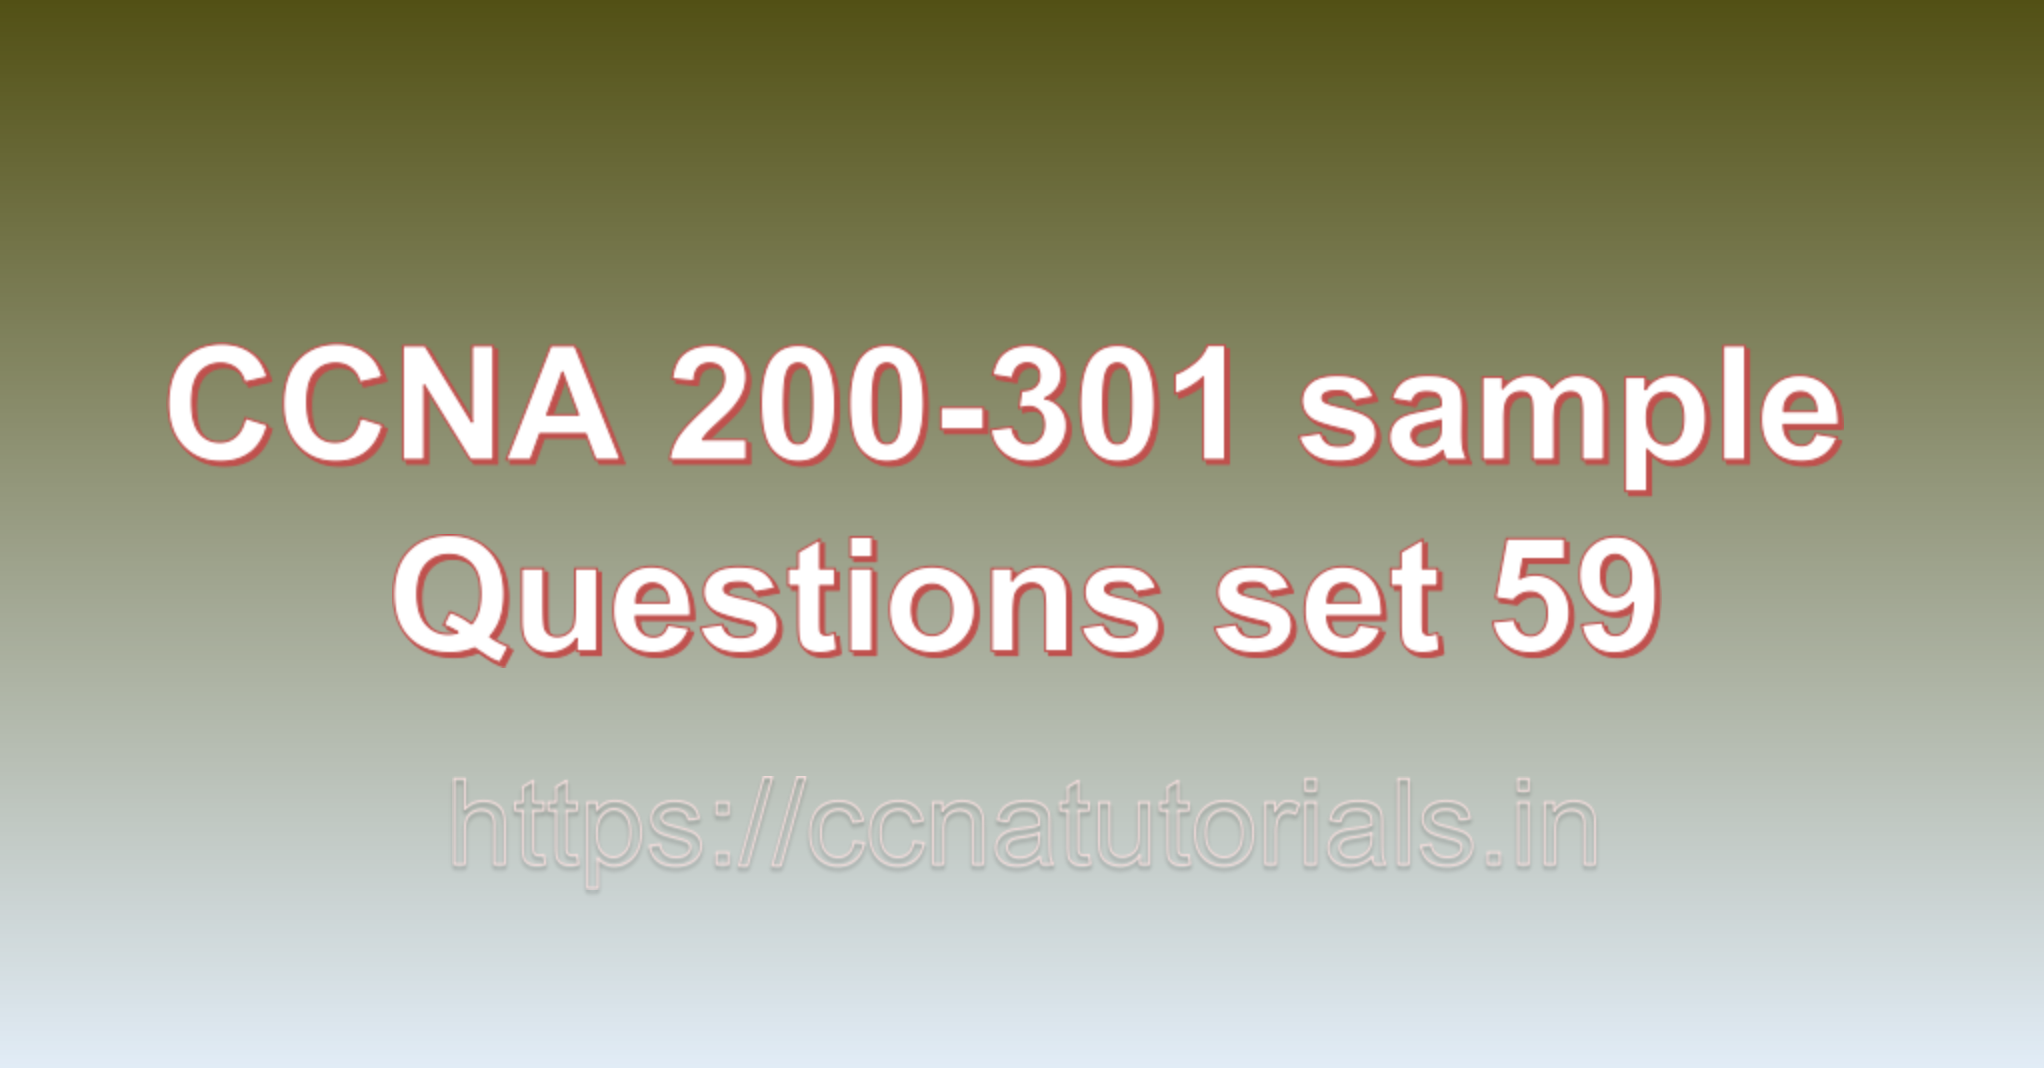 ccna sample questions set 59, ccna tutorials, CCNA Exam, ccna